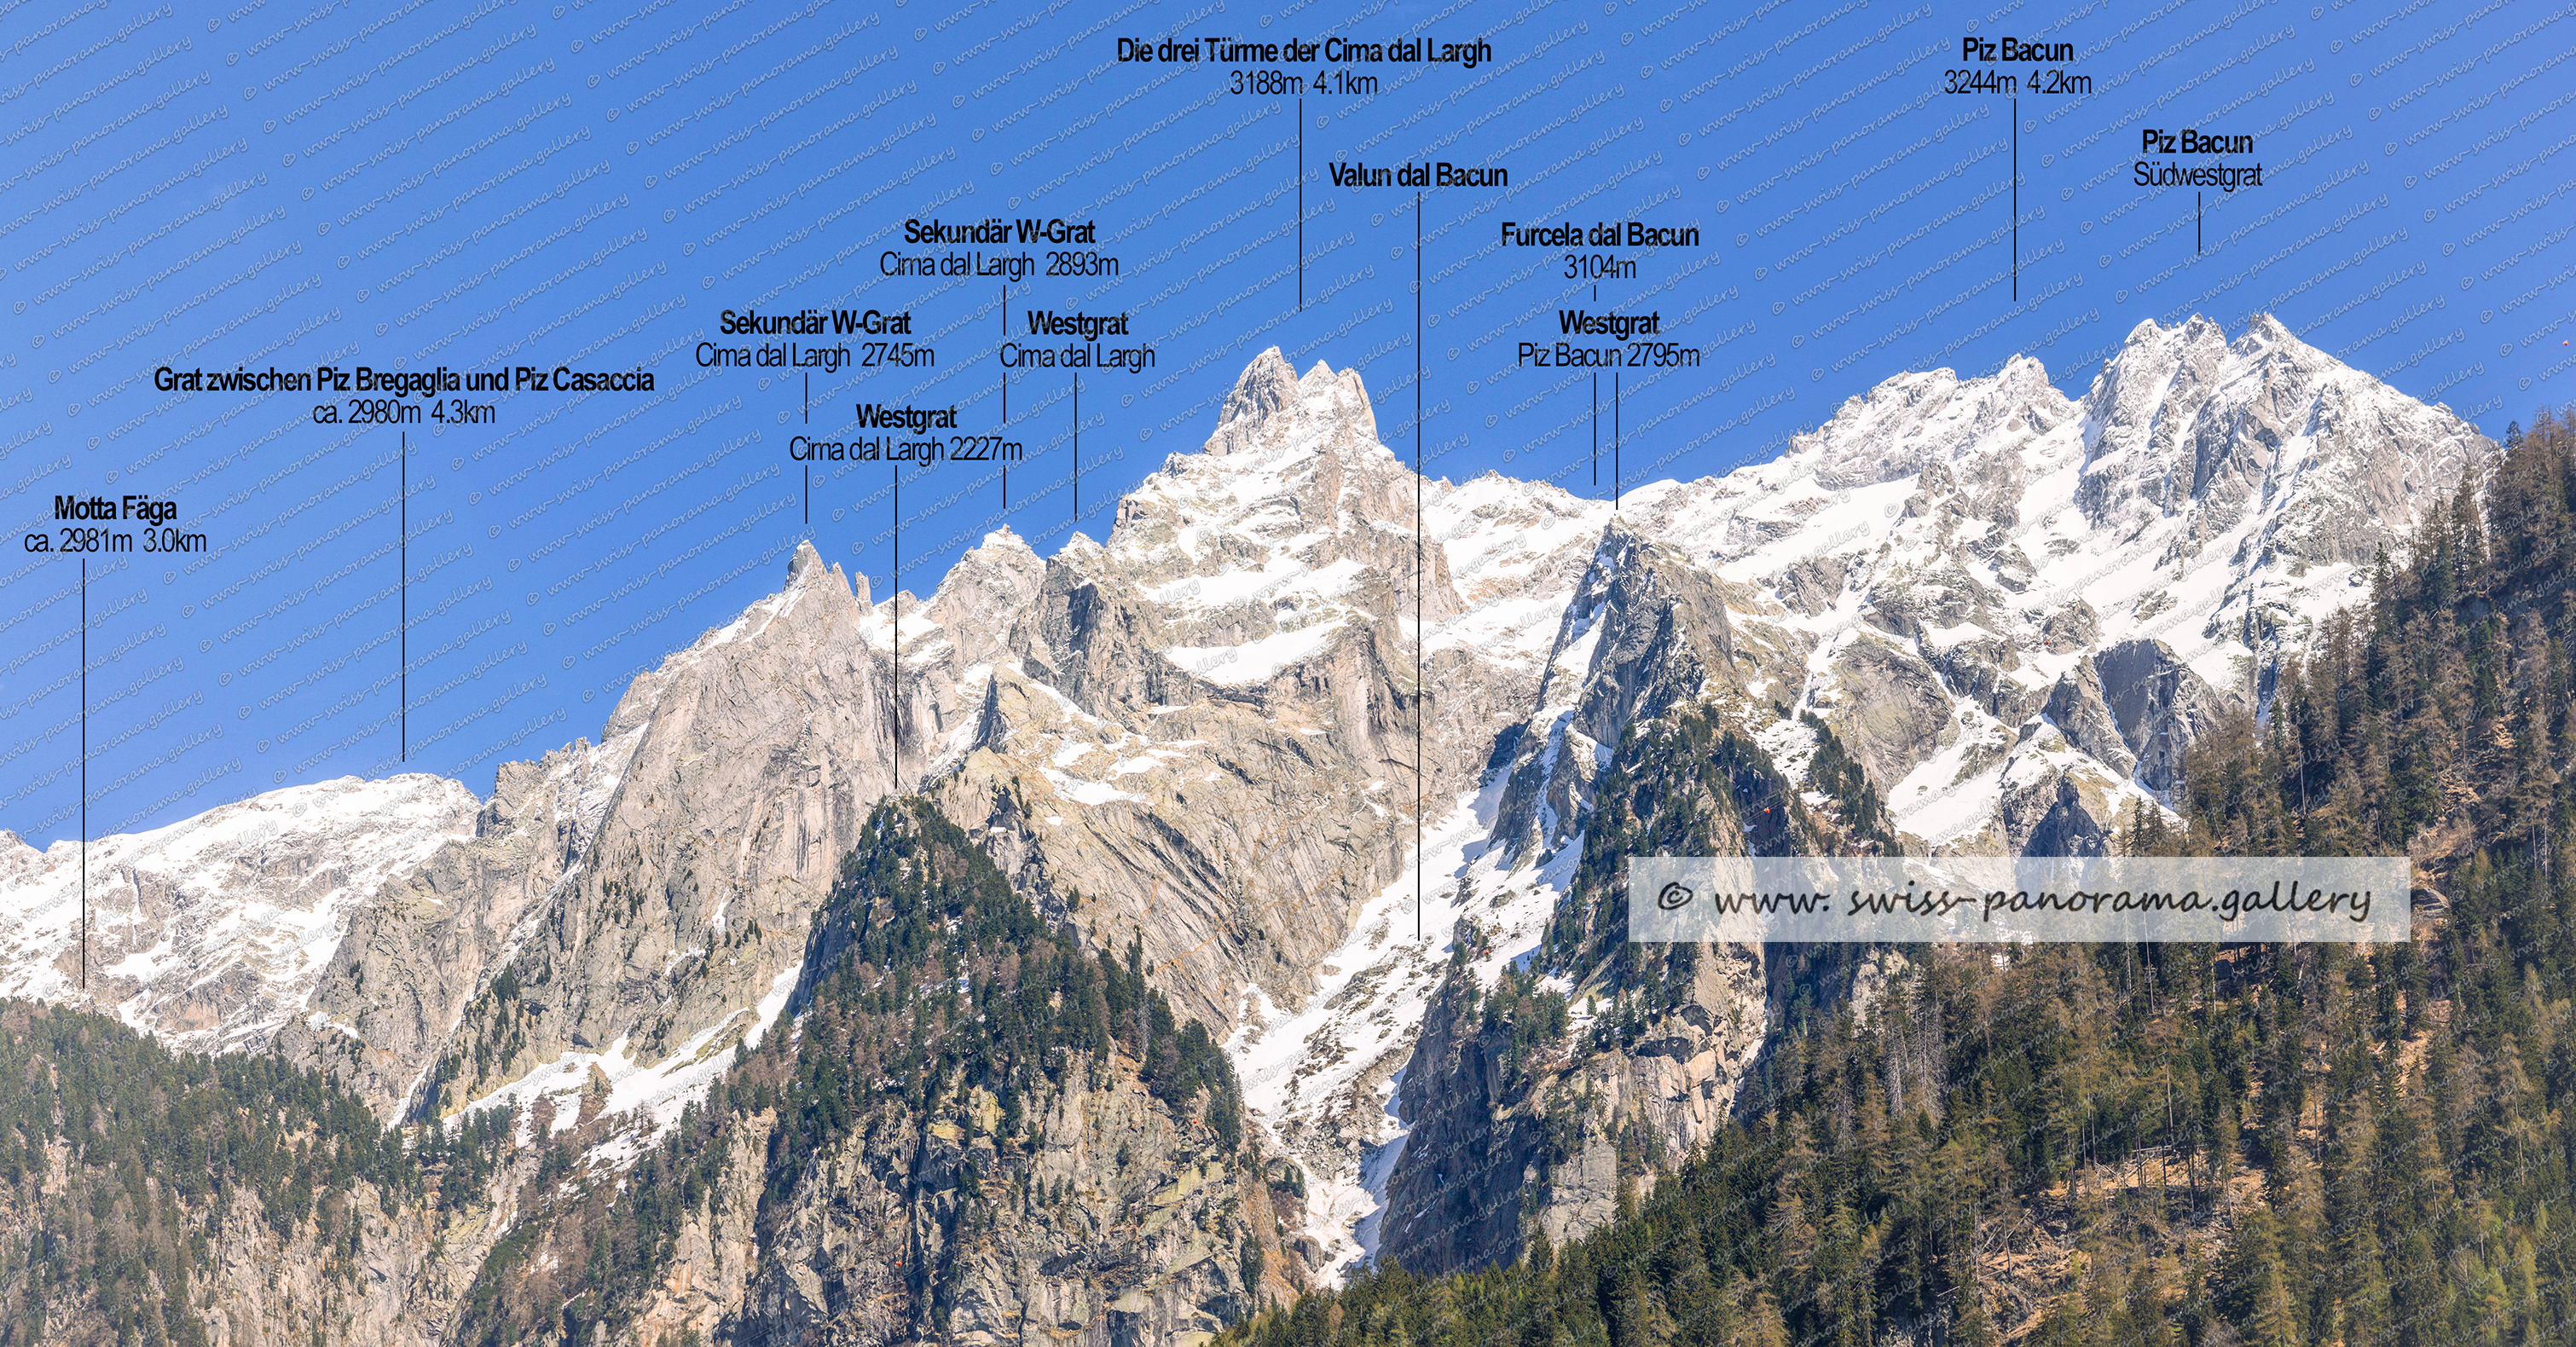 Schweizer Alpenpanorama, Bregaglia, Blick von Visosoprano zu den Gipfeln der Cima dal Largh und Piz Bacun swiss panorama.gallery